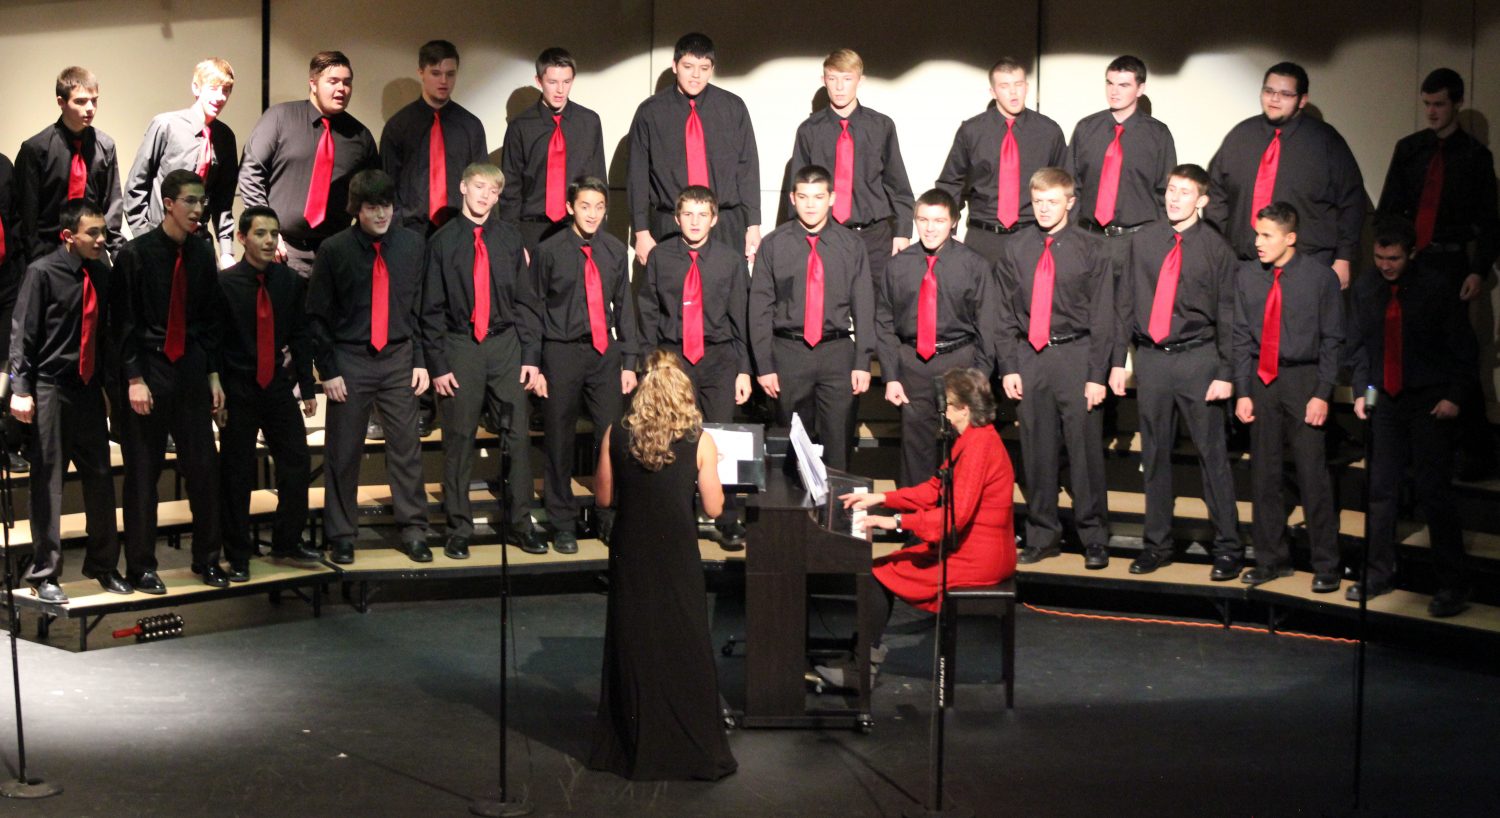 Choir brings in the new season